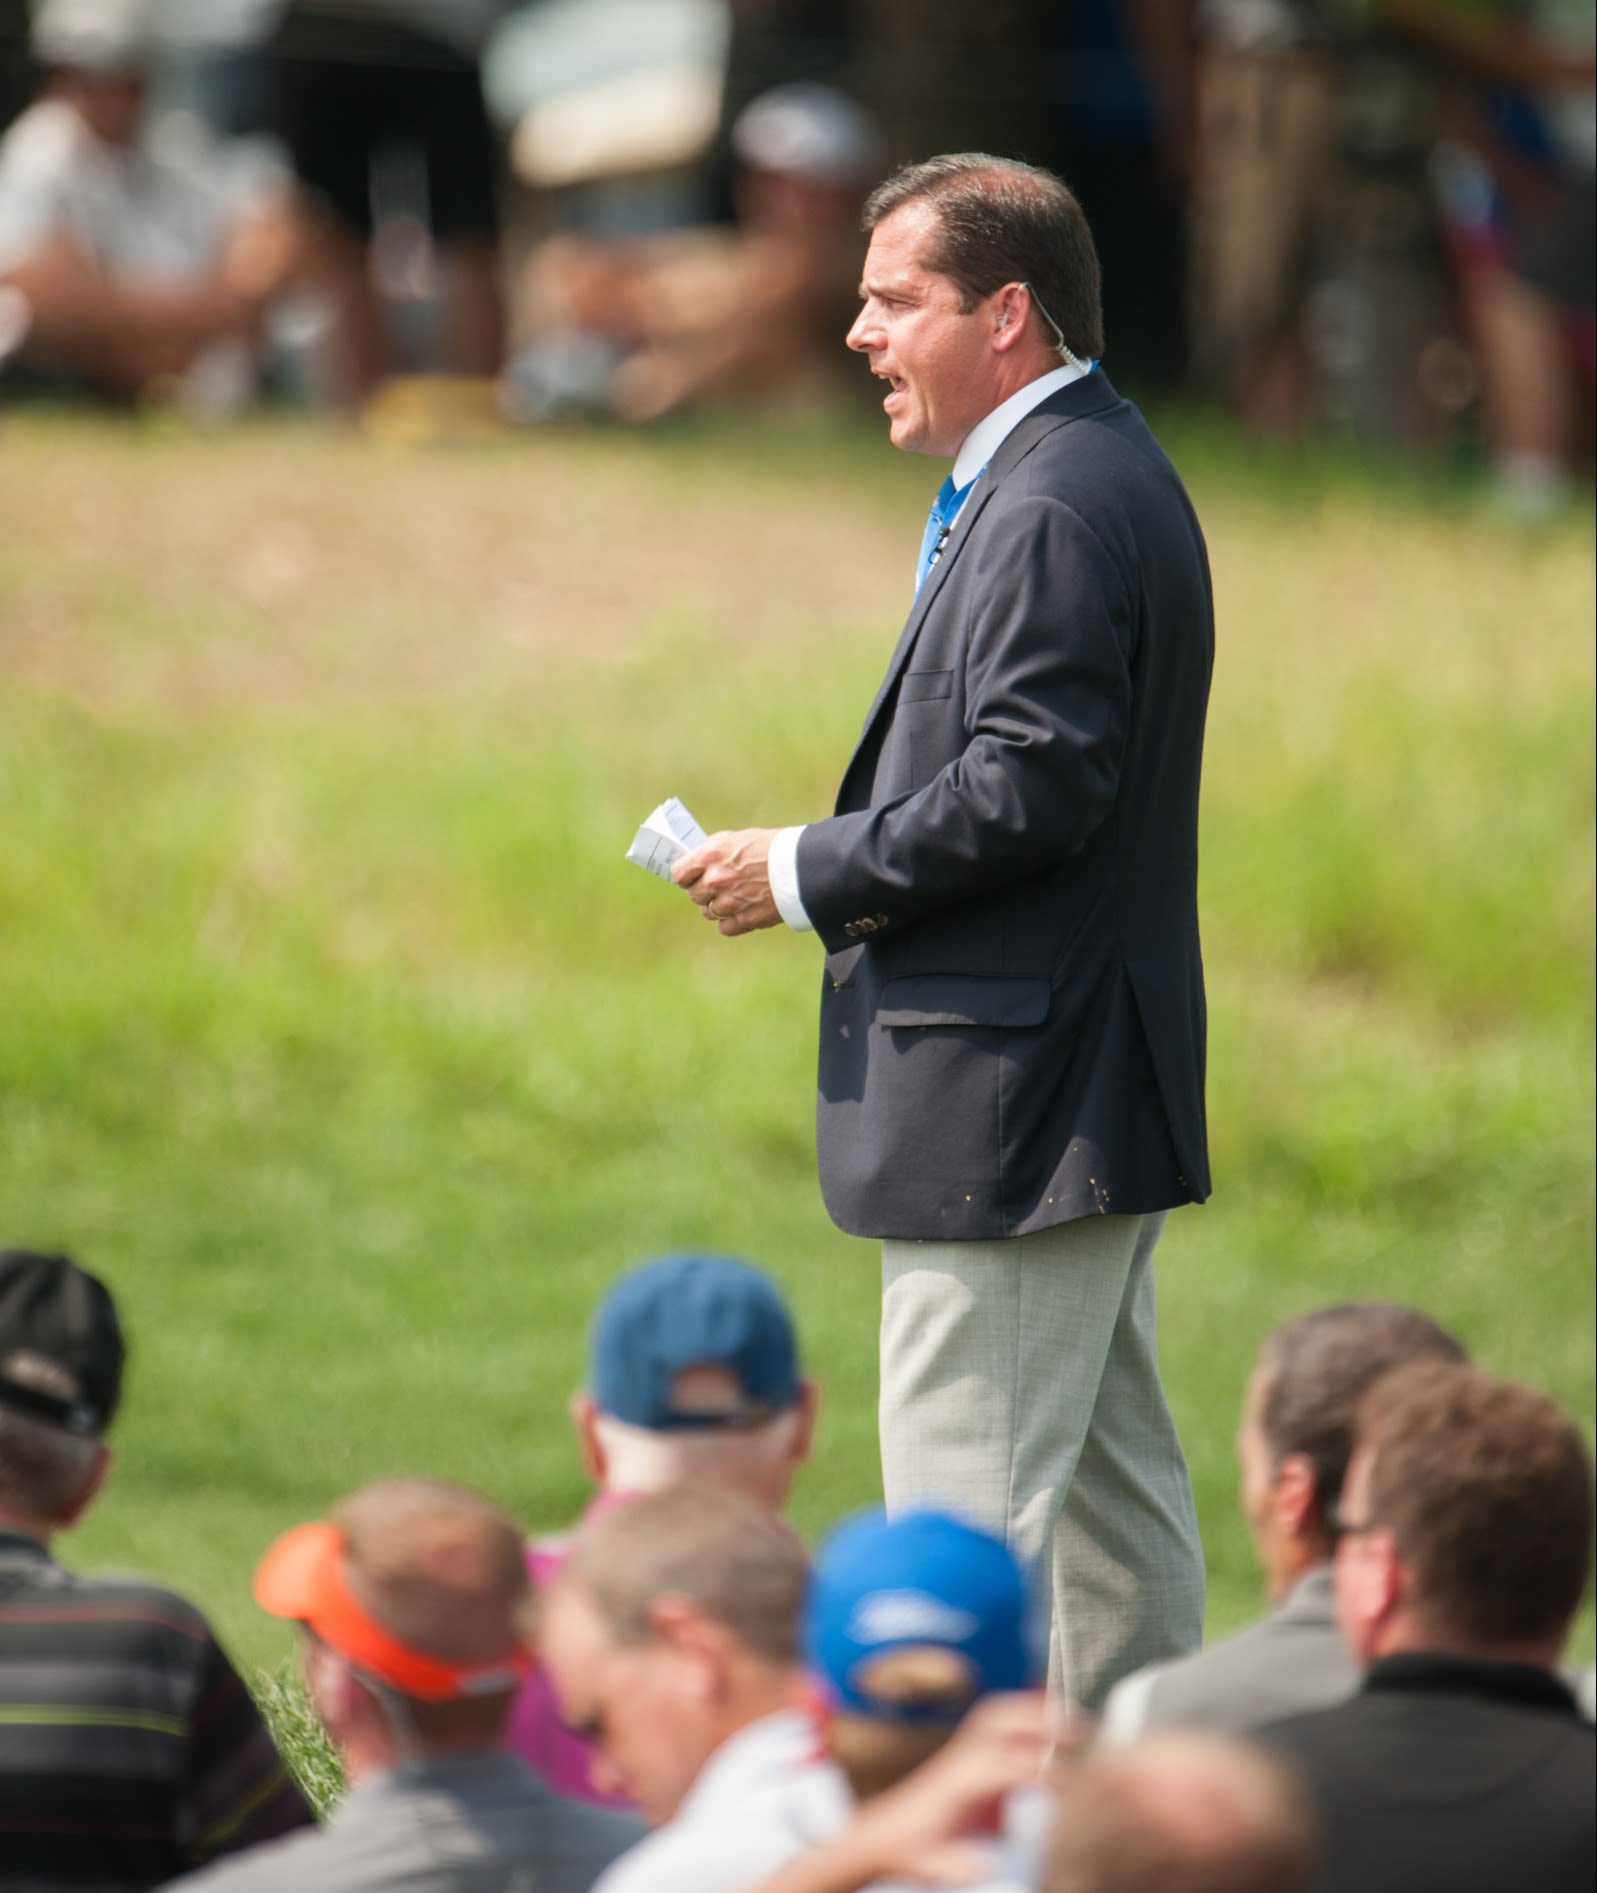 Sprague at the 2014 PGA.